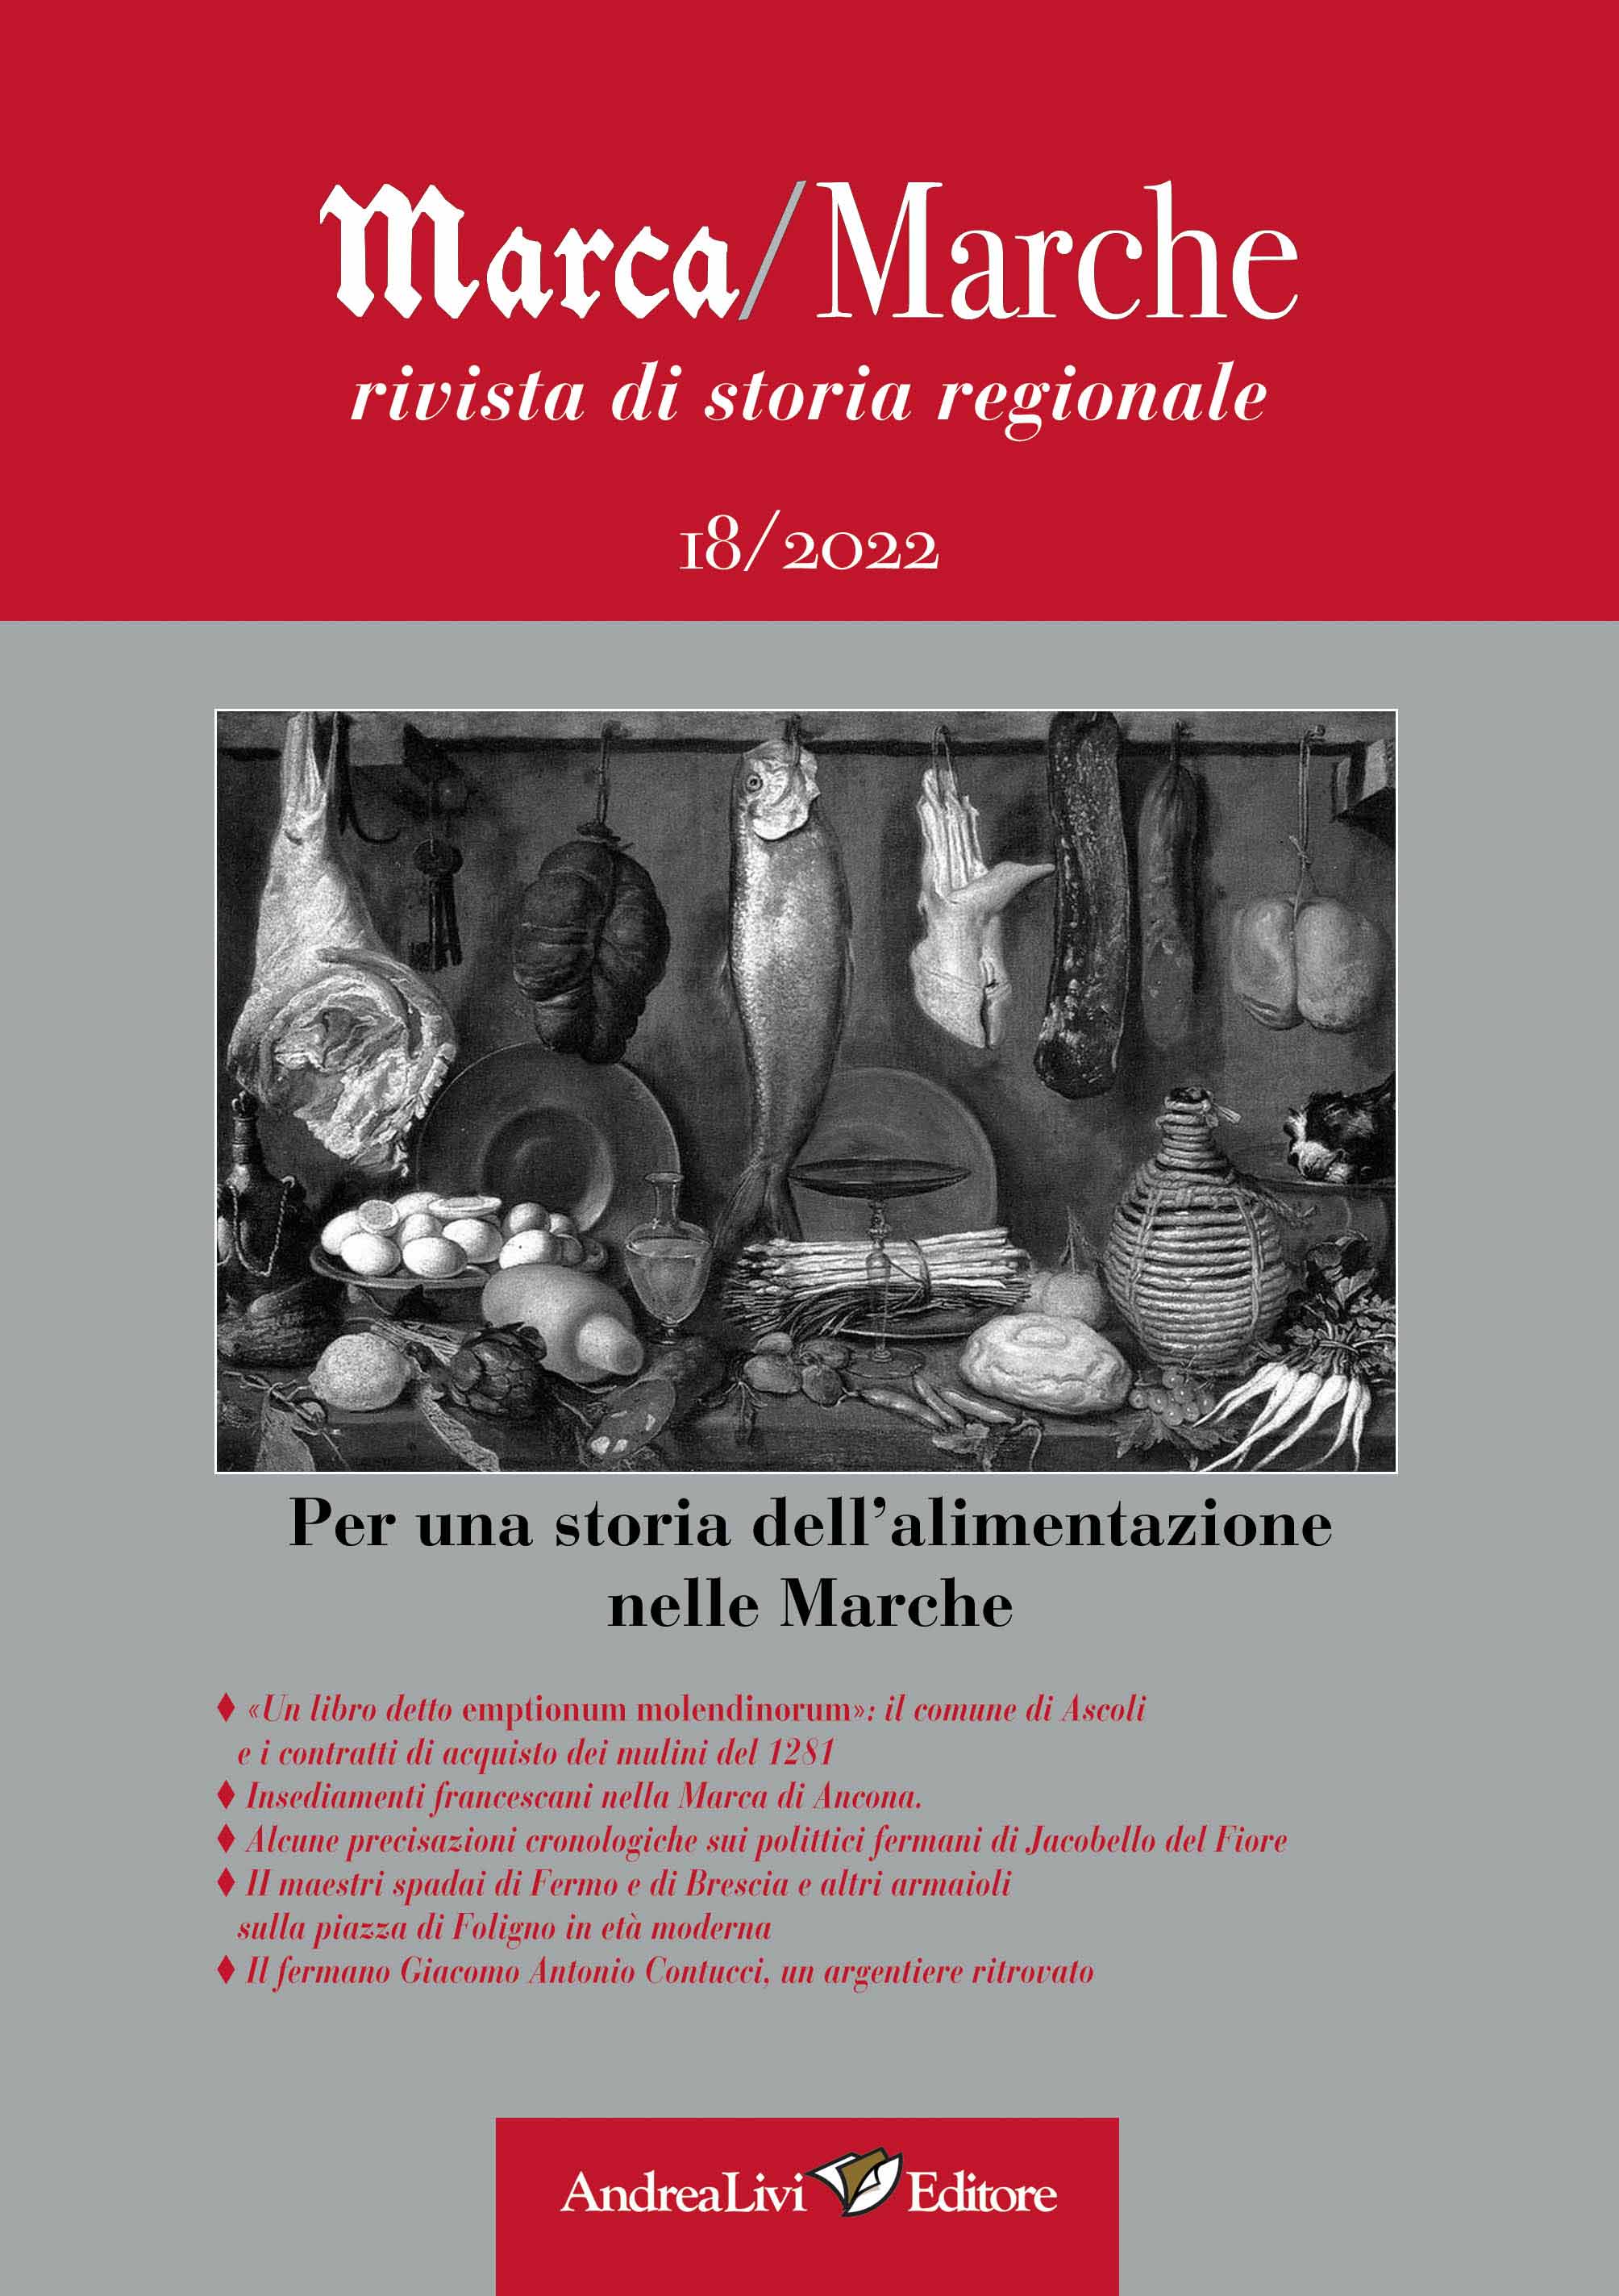  Per una storia dell’alimentazione nelle Marche a cura di Marco Moroni, «Marca/Marche», 18 (2022)